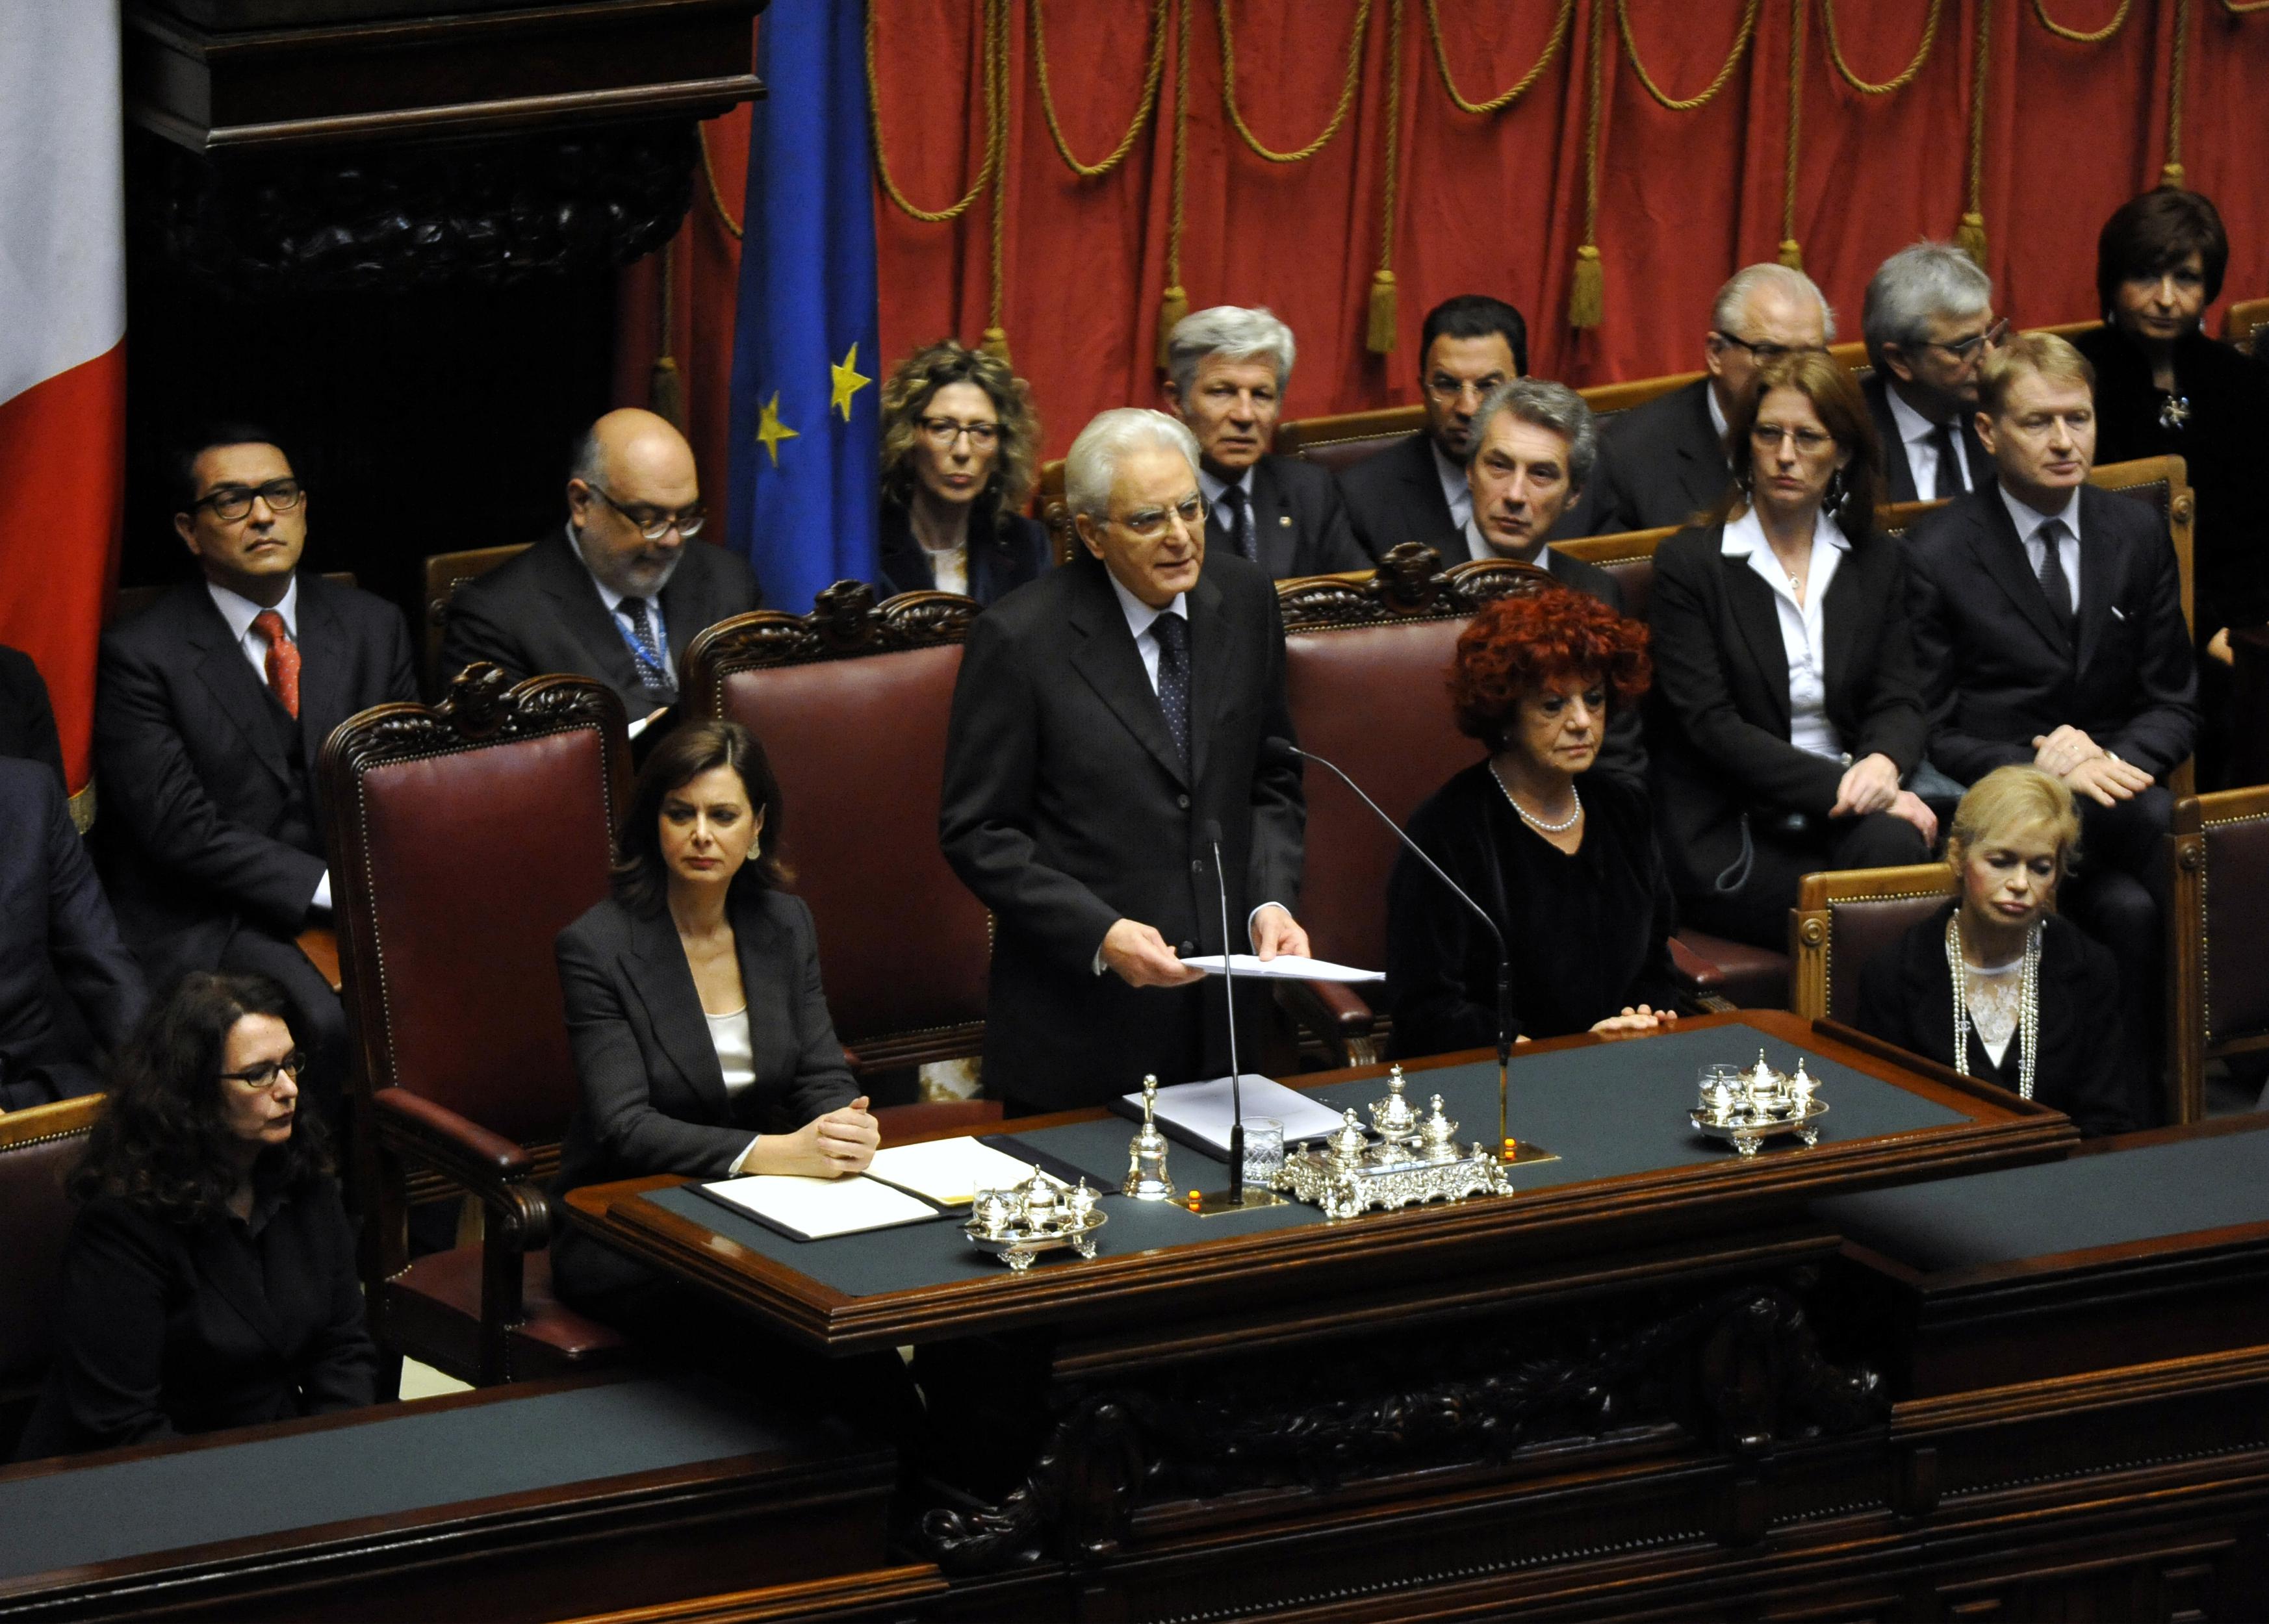 Afianco alla presidente della Camera Laura Boldrini e alla vice presidente del Senato Valeria Fedeli (foto Adnkronos/Cristiano Camera)